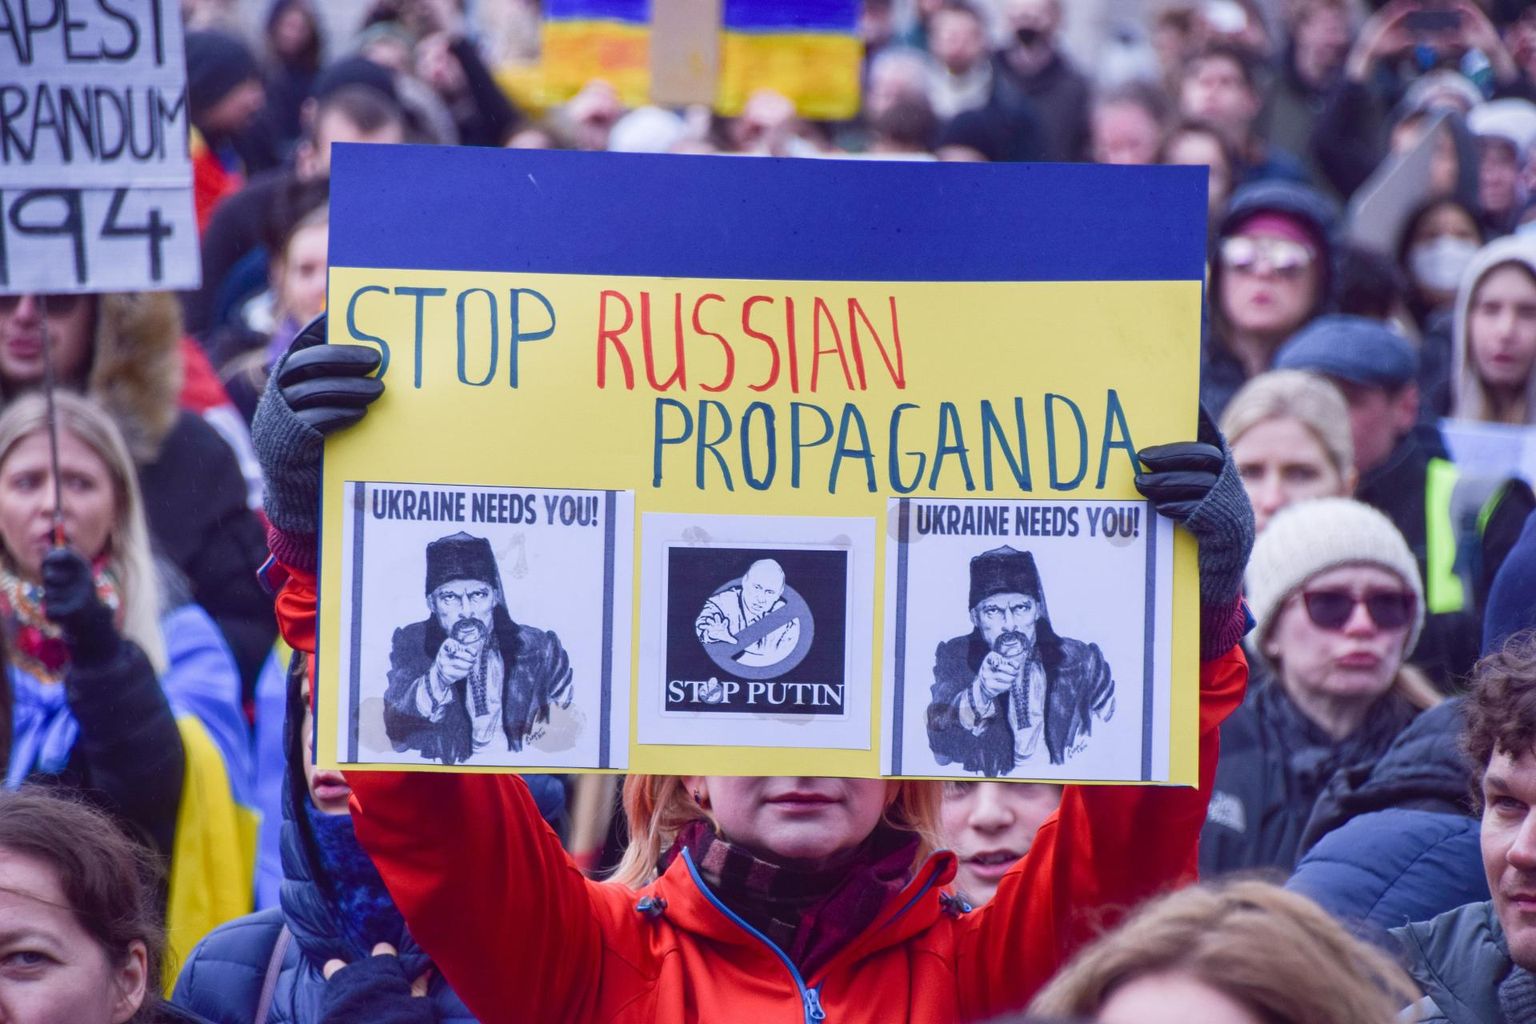 «Tehke lõpp Vene propagandale!» – sellise nõudmisega plakatid on viimase kahe nädala jooksul olnud väljas tuhandetel Ukrainat pooldavatel meeleavaldustel üle kogu maailma.